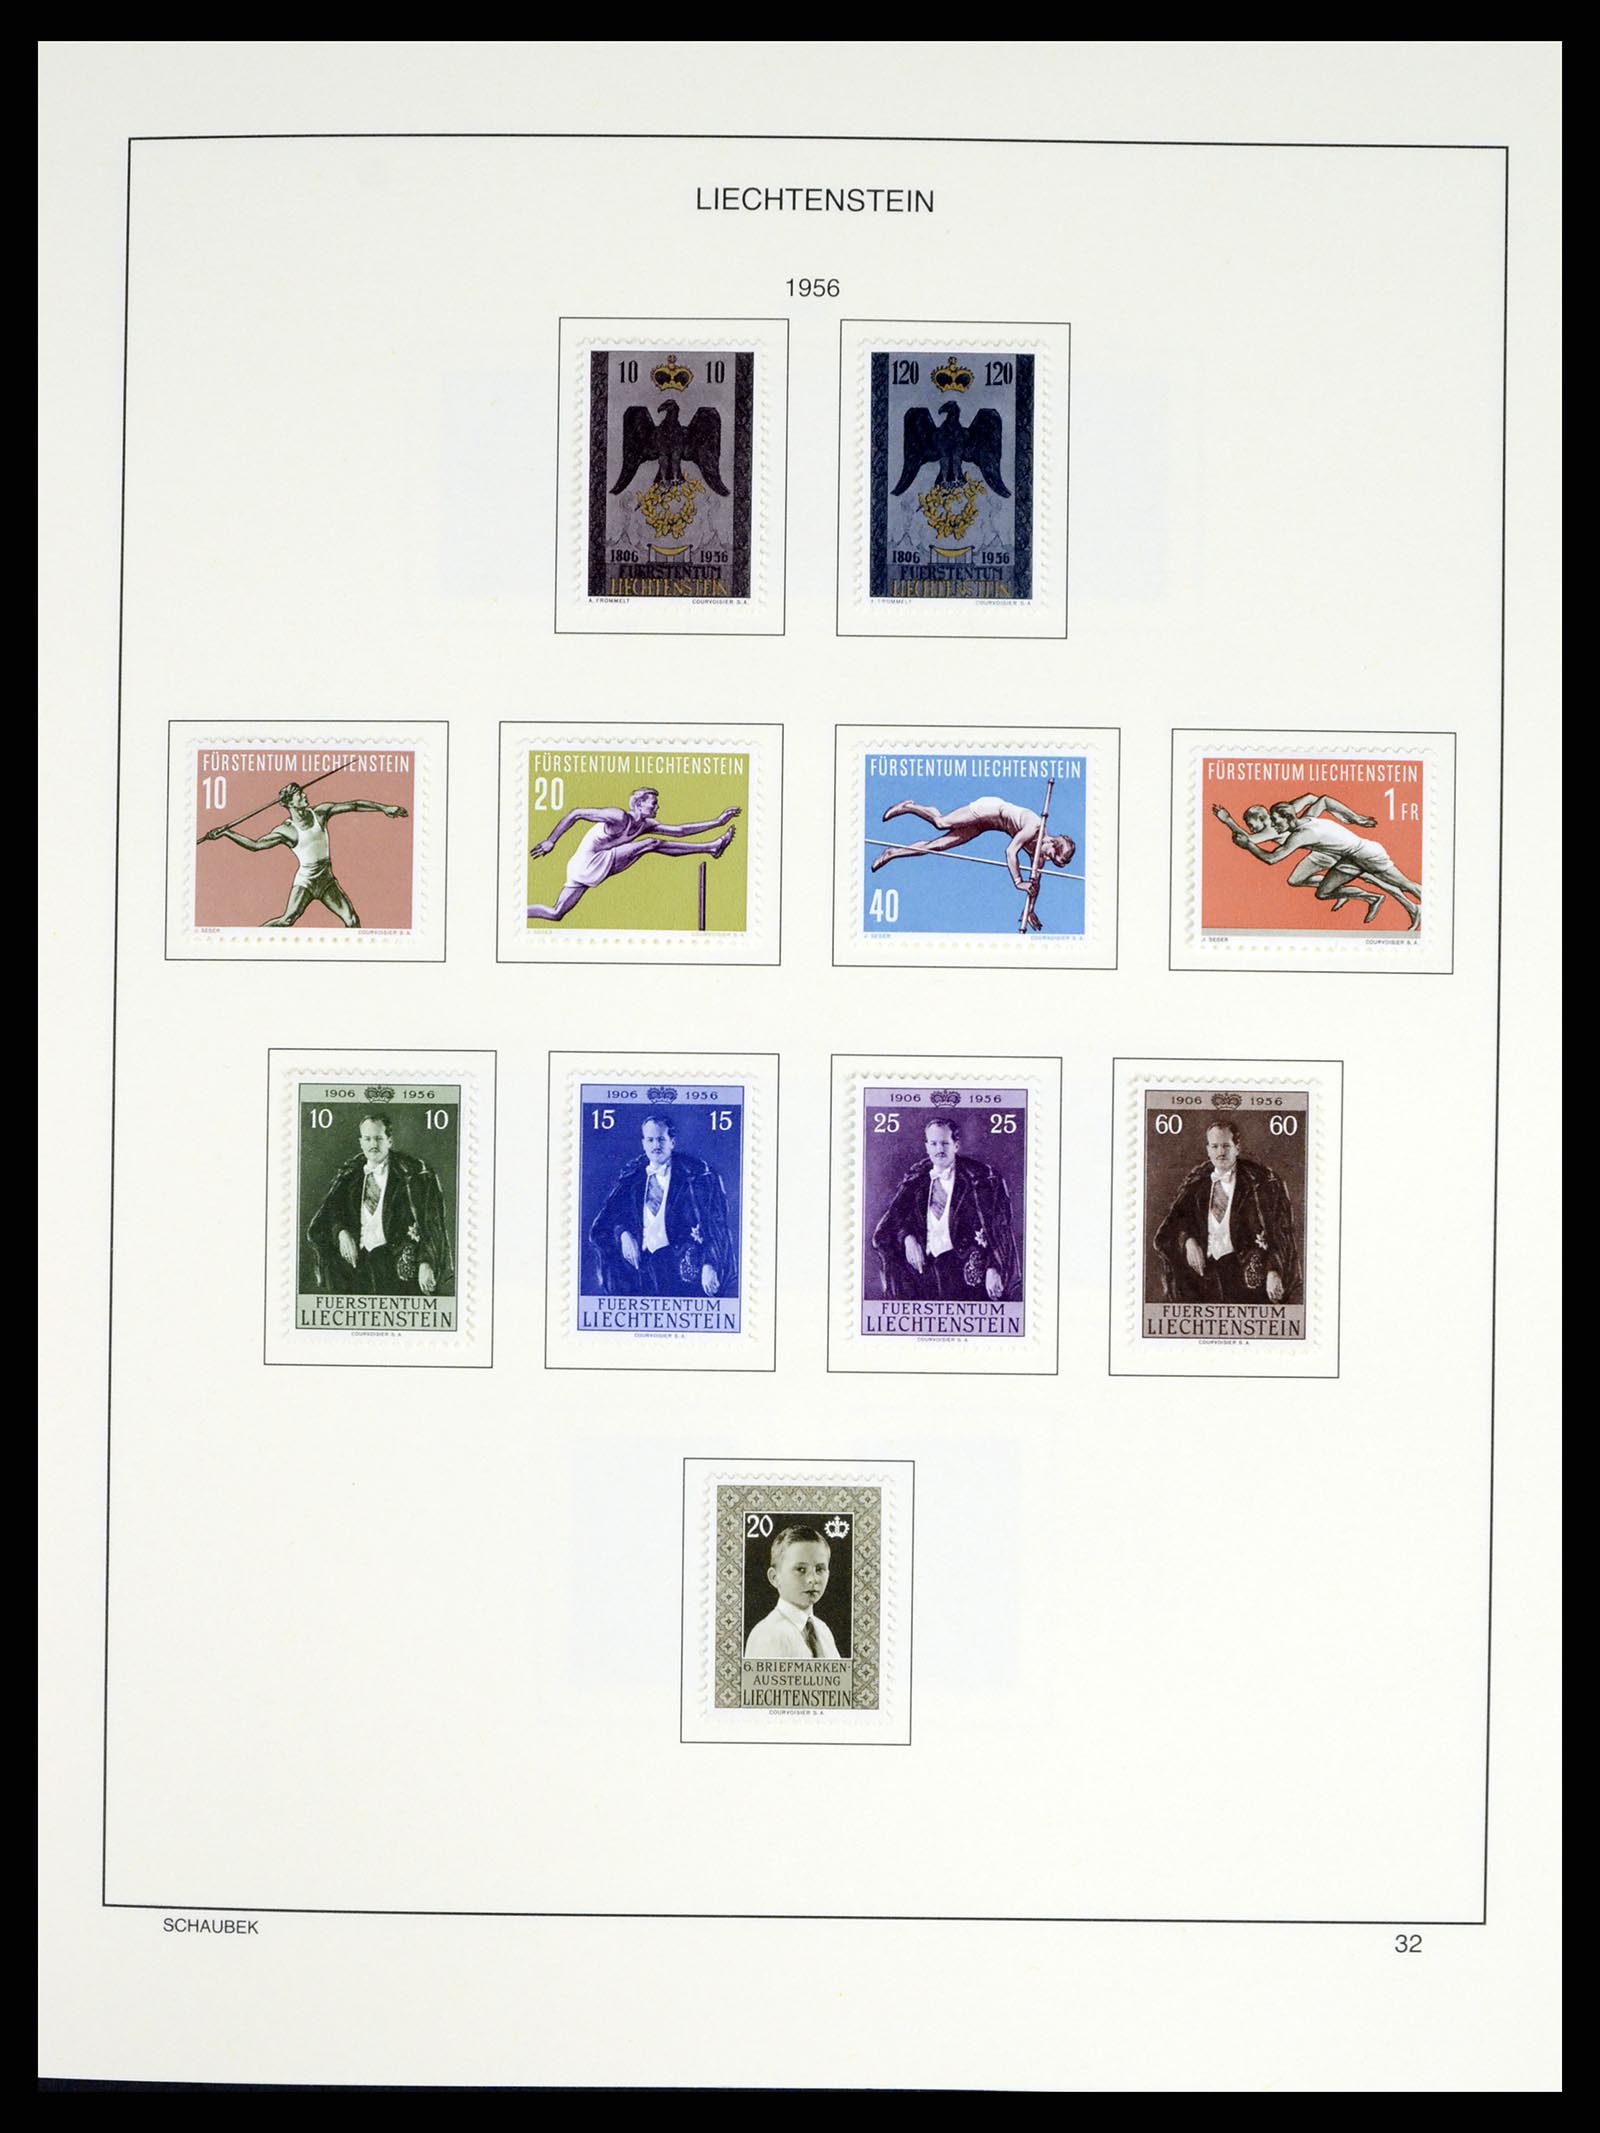 37547 037 - Stamp collection 37547 Liechtenstein 1912-2011.